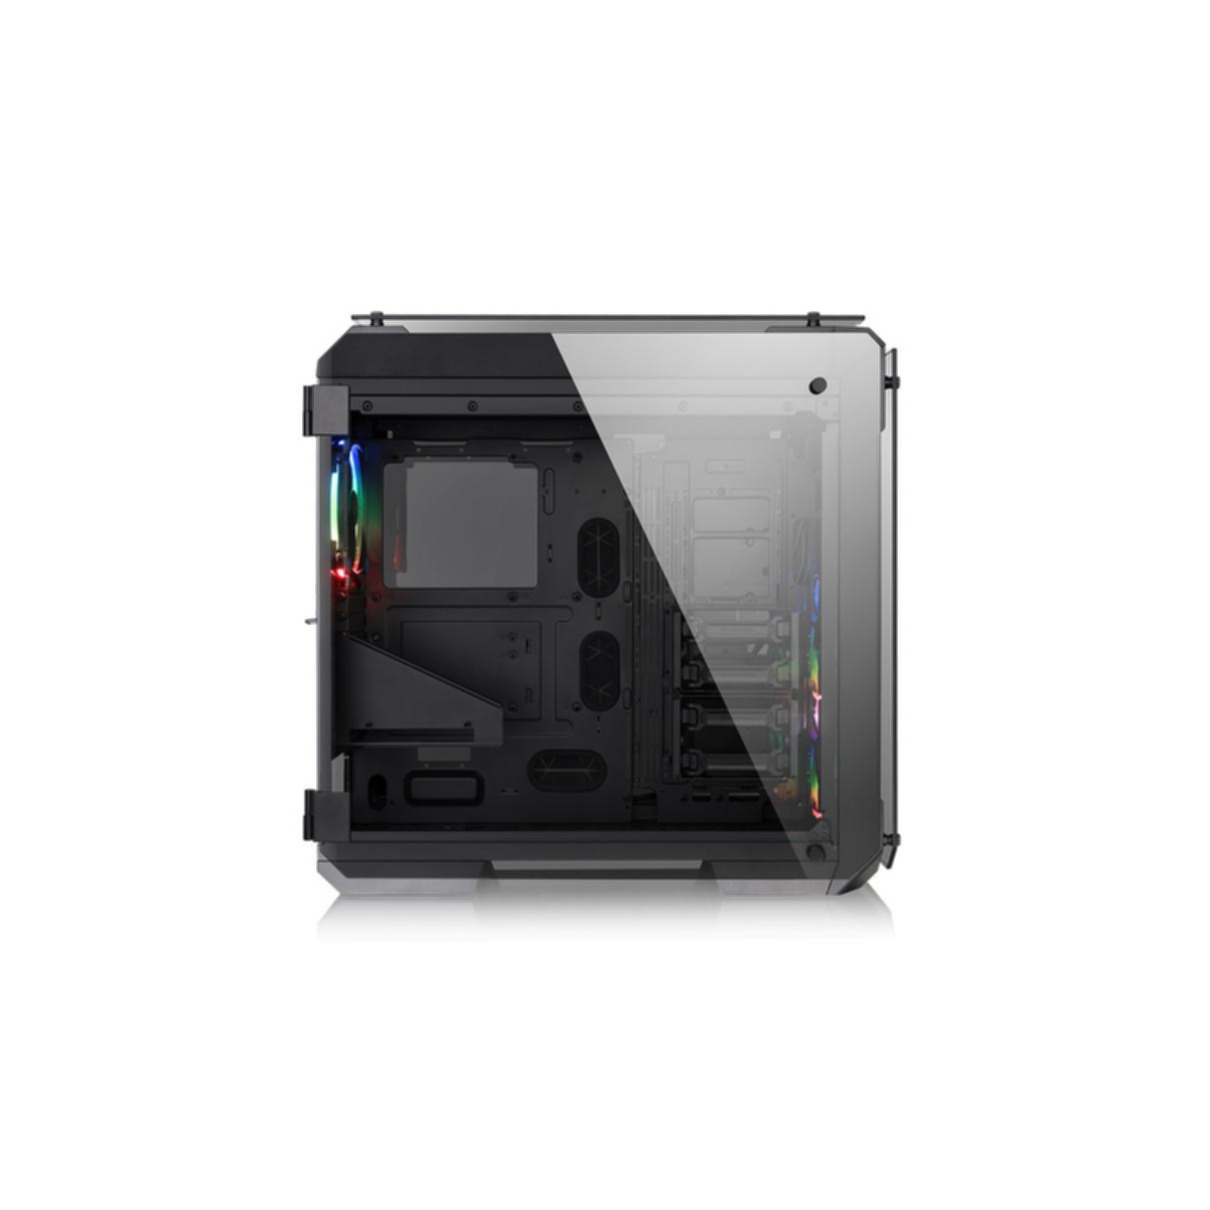 Glass RGB Tempered 71 View Gehäuse, schwarz Edition THERMALTAKE PC